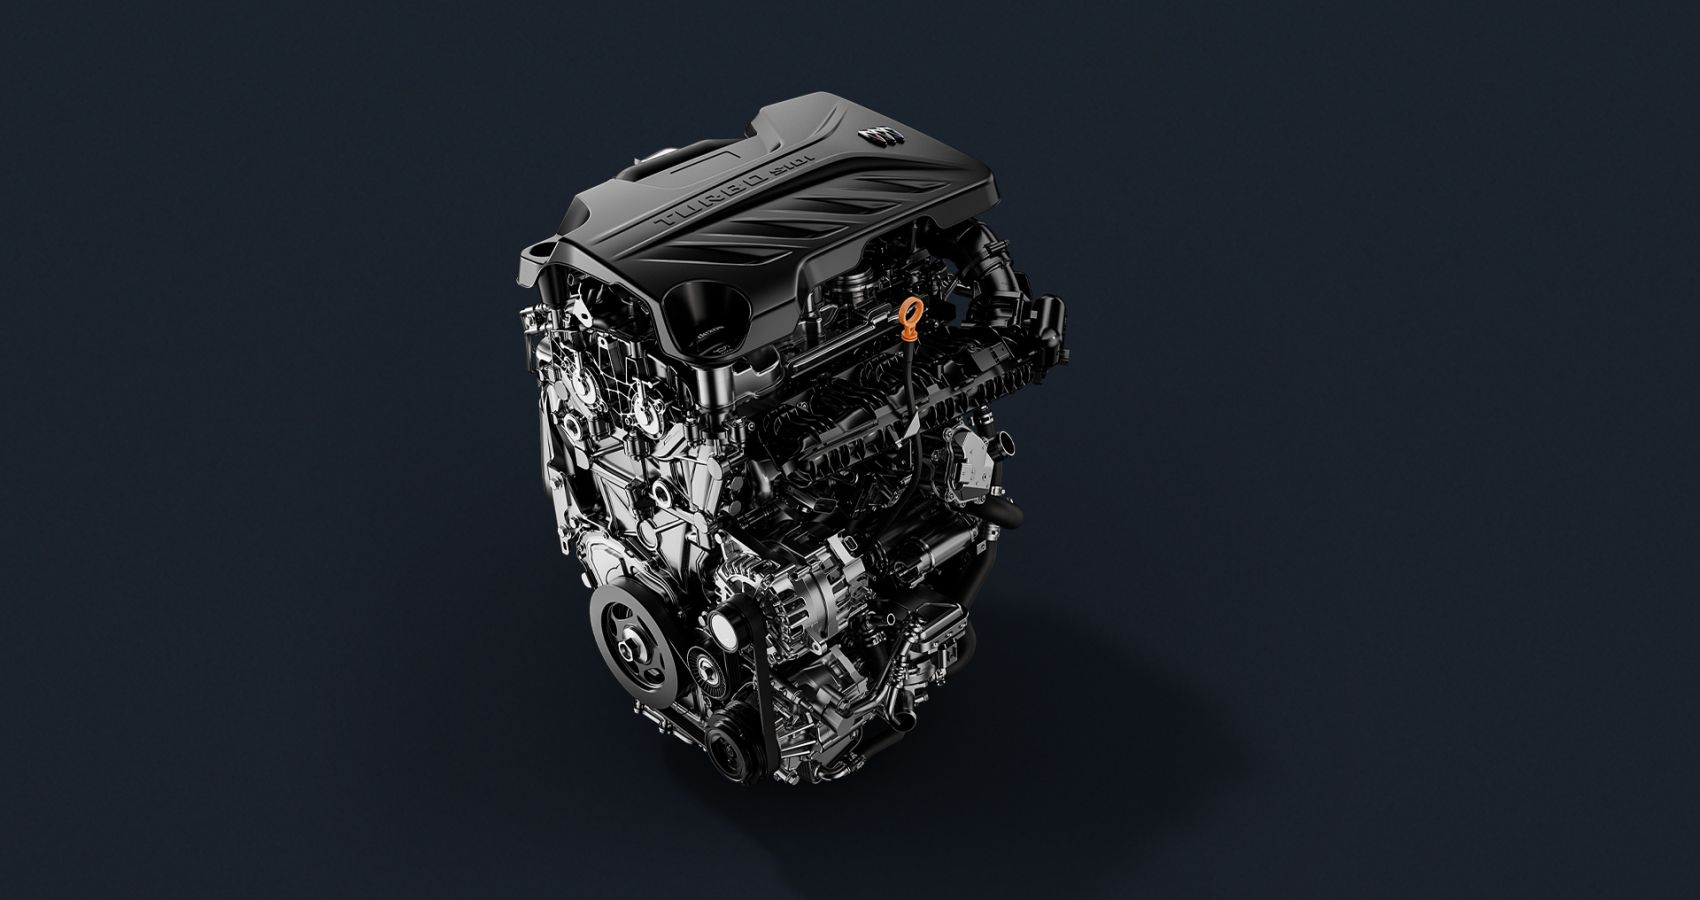 Buick Envista Gets A New 1.5-liter Turbo Ecotek Four-Cylinder Engine